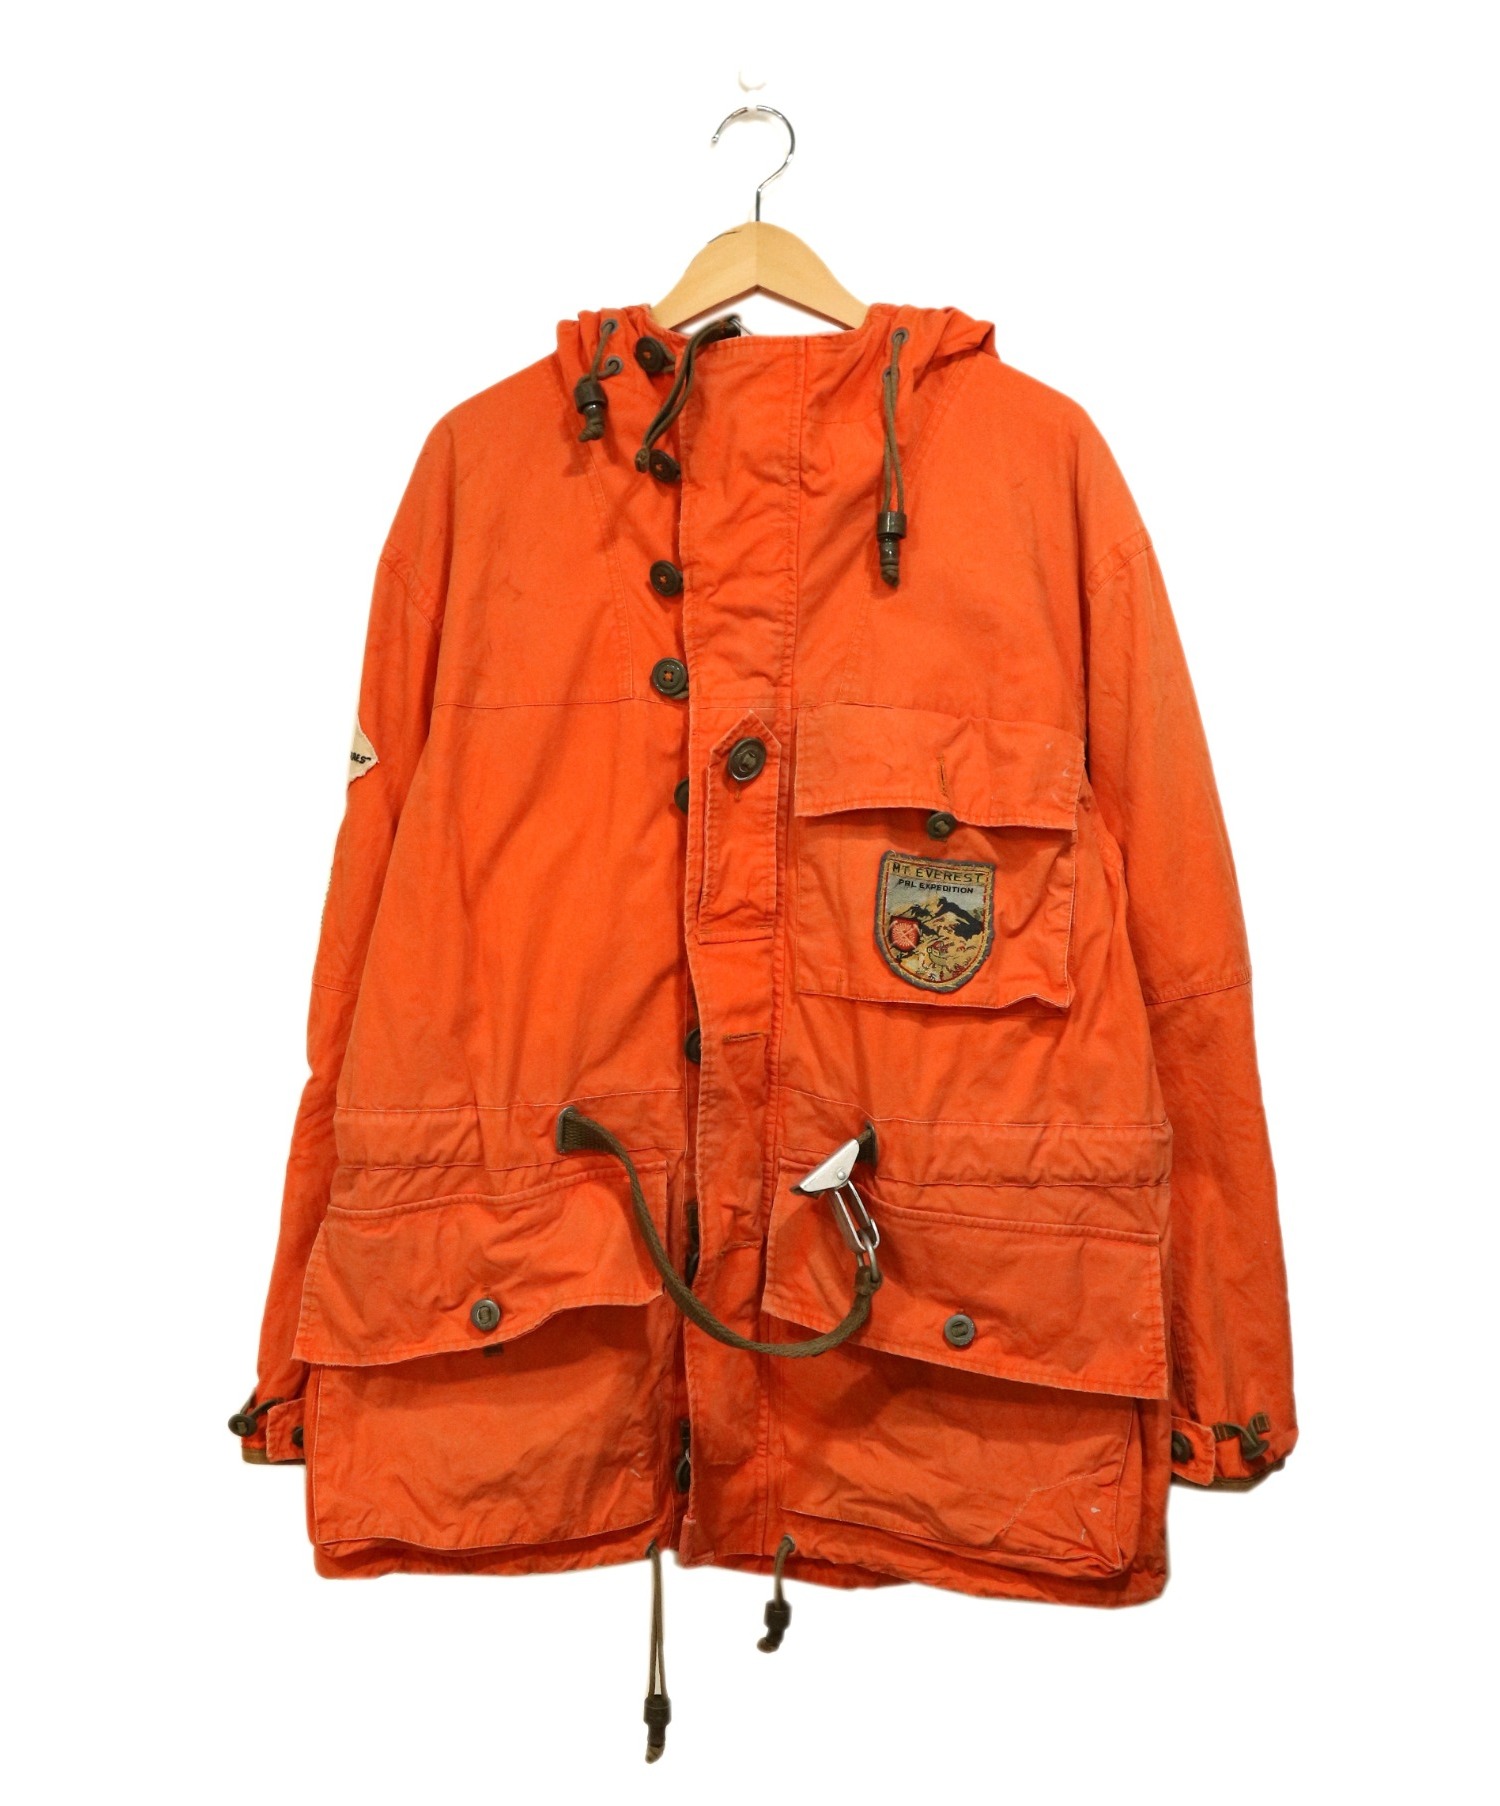 POLO RALPH LAUREN (ポロラルフローレン) ミリタリージャケット オレンジ サイズ:L